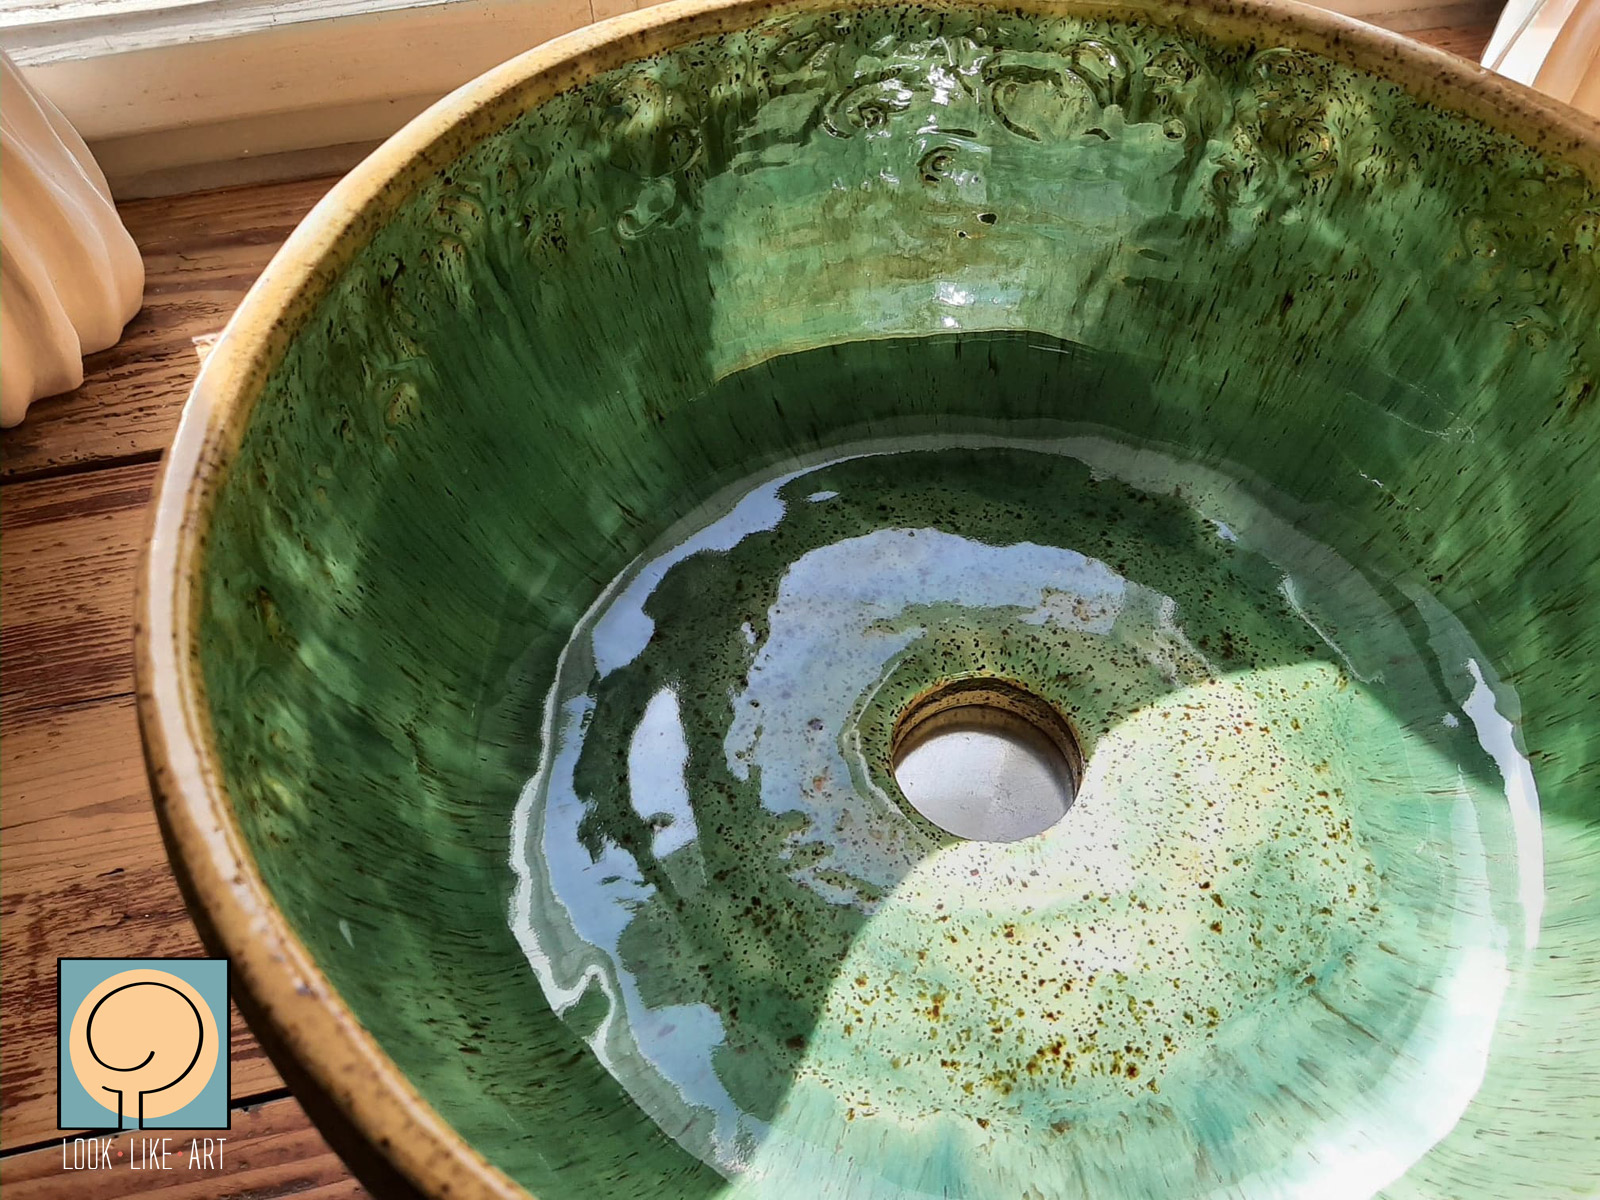 Ceramiczna umywalka do łazienki, ręcznie wykonana. Unikat. Autor: Magdalena Pelczar-Wieczorek